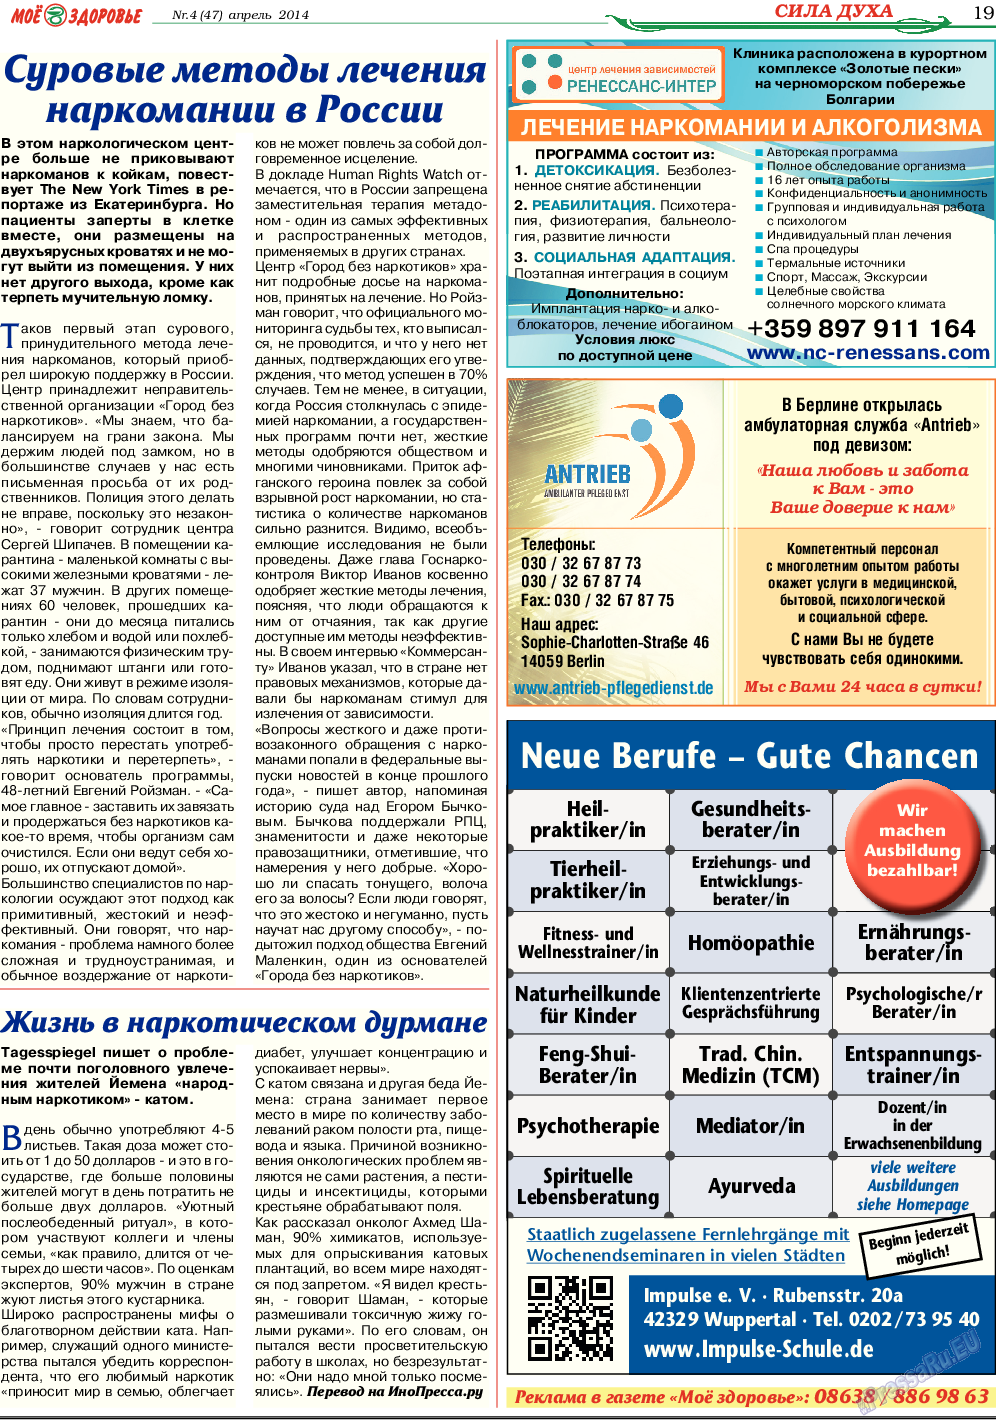 Кругозор (газета). 2014 год, номер 4, стр. 19